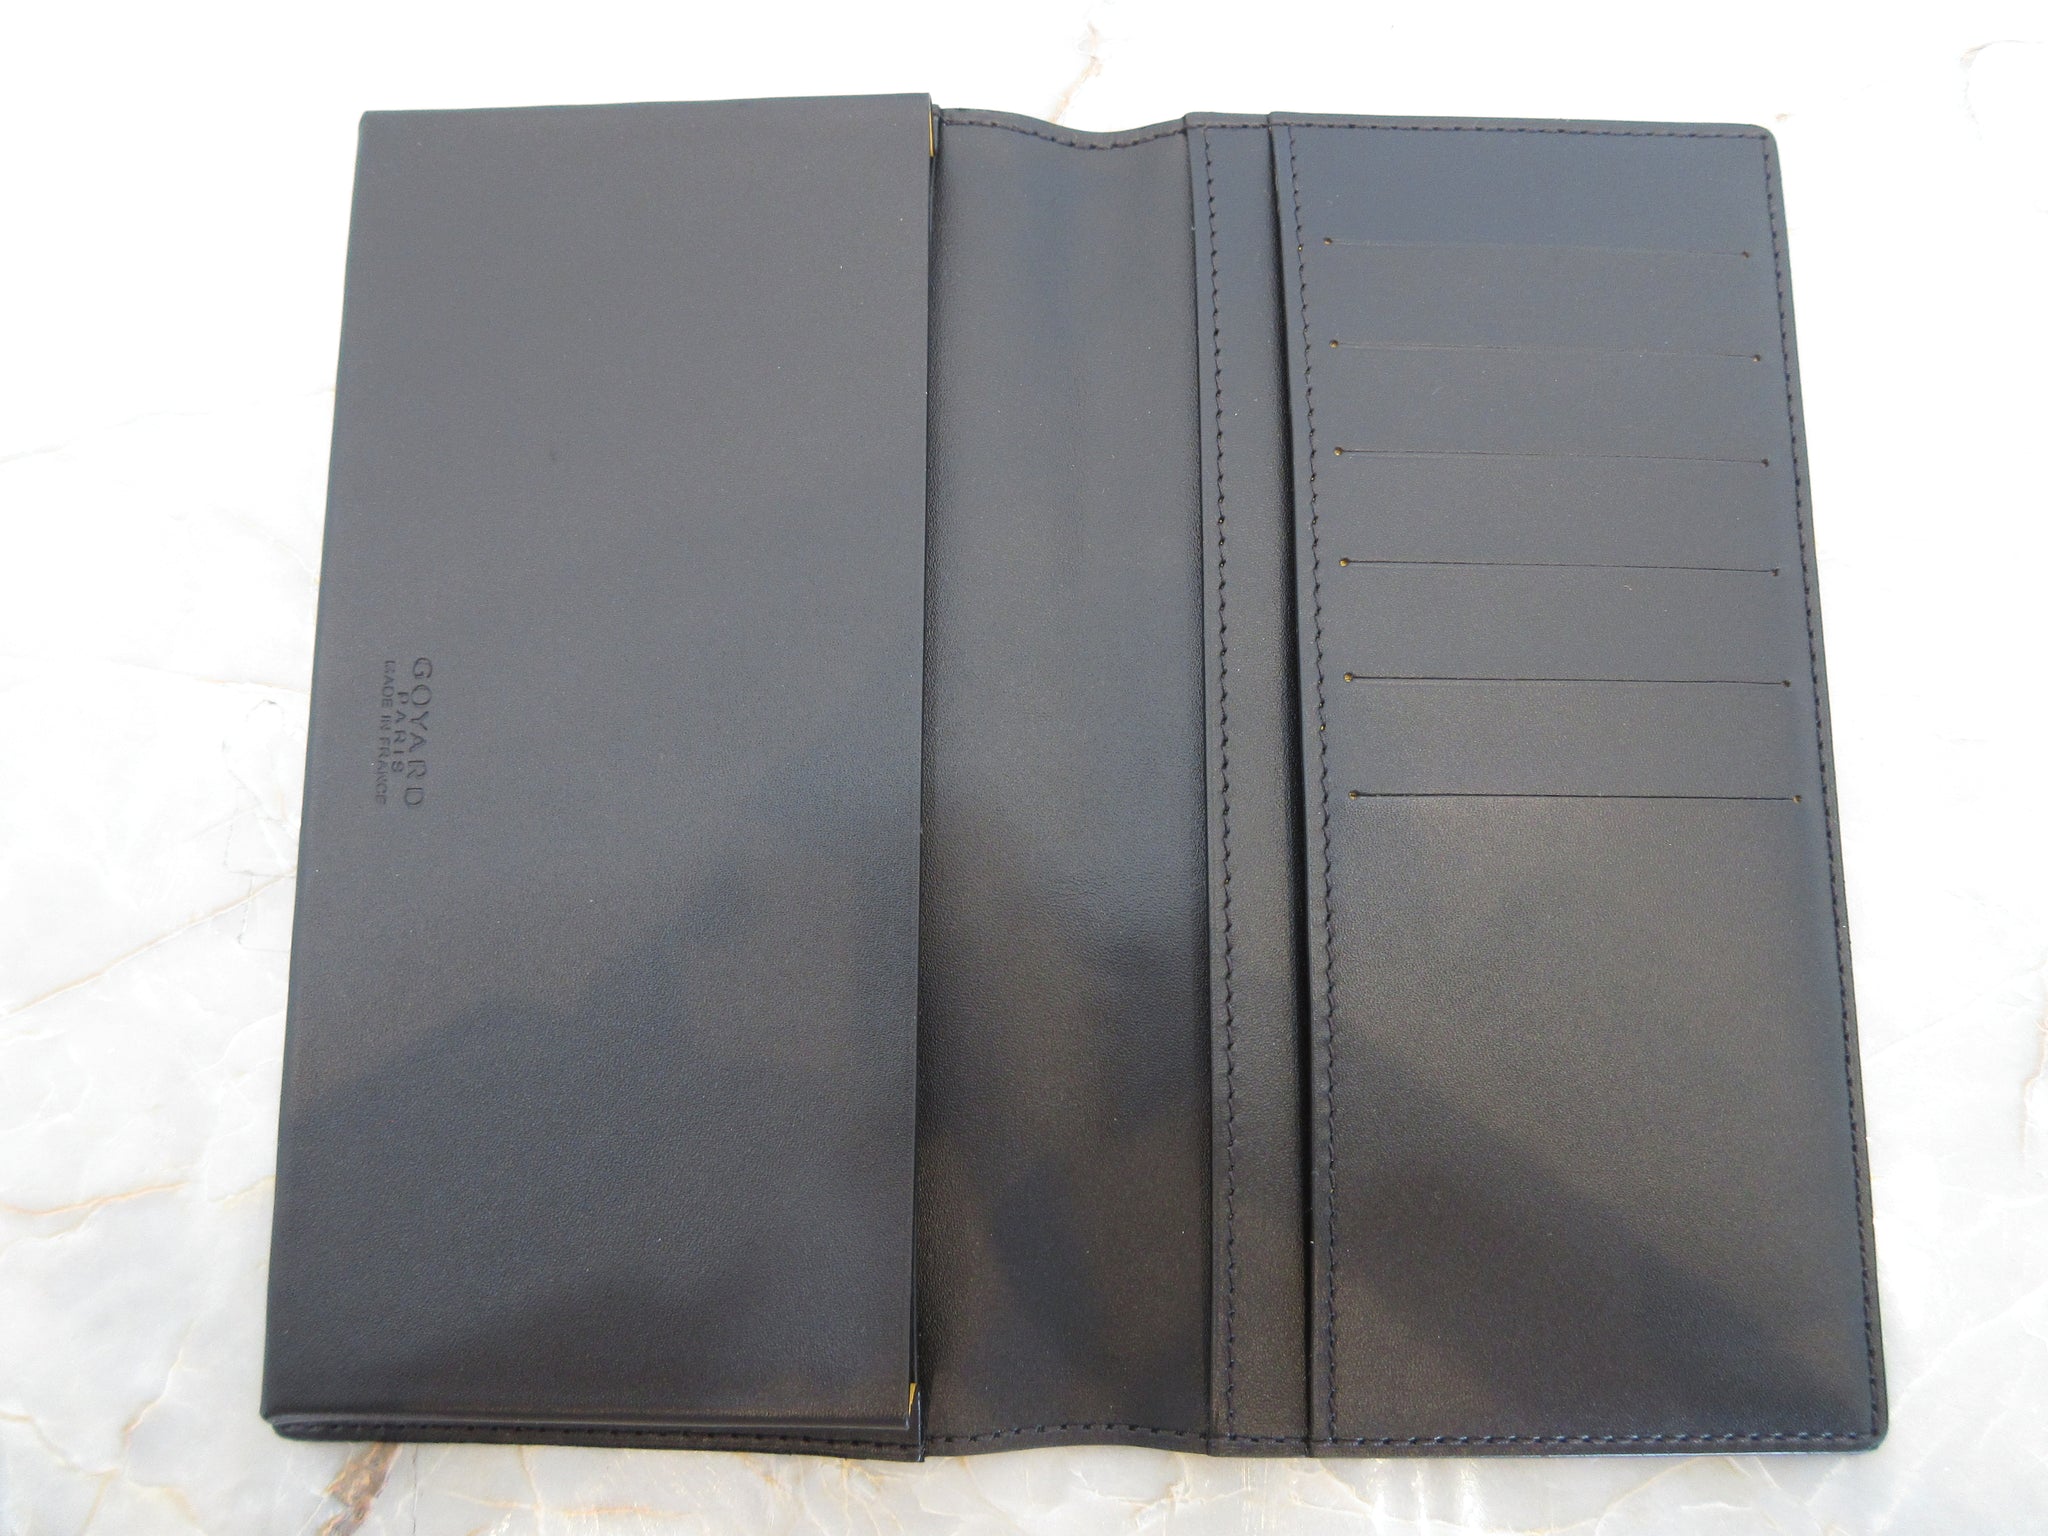 Richelieu cloth wallet Goyard Black in Cloth - 31292263